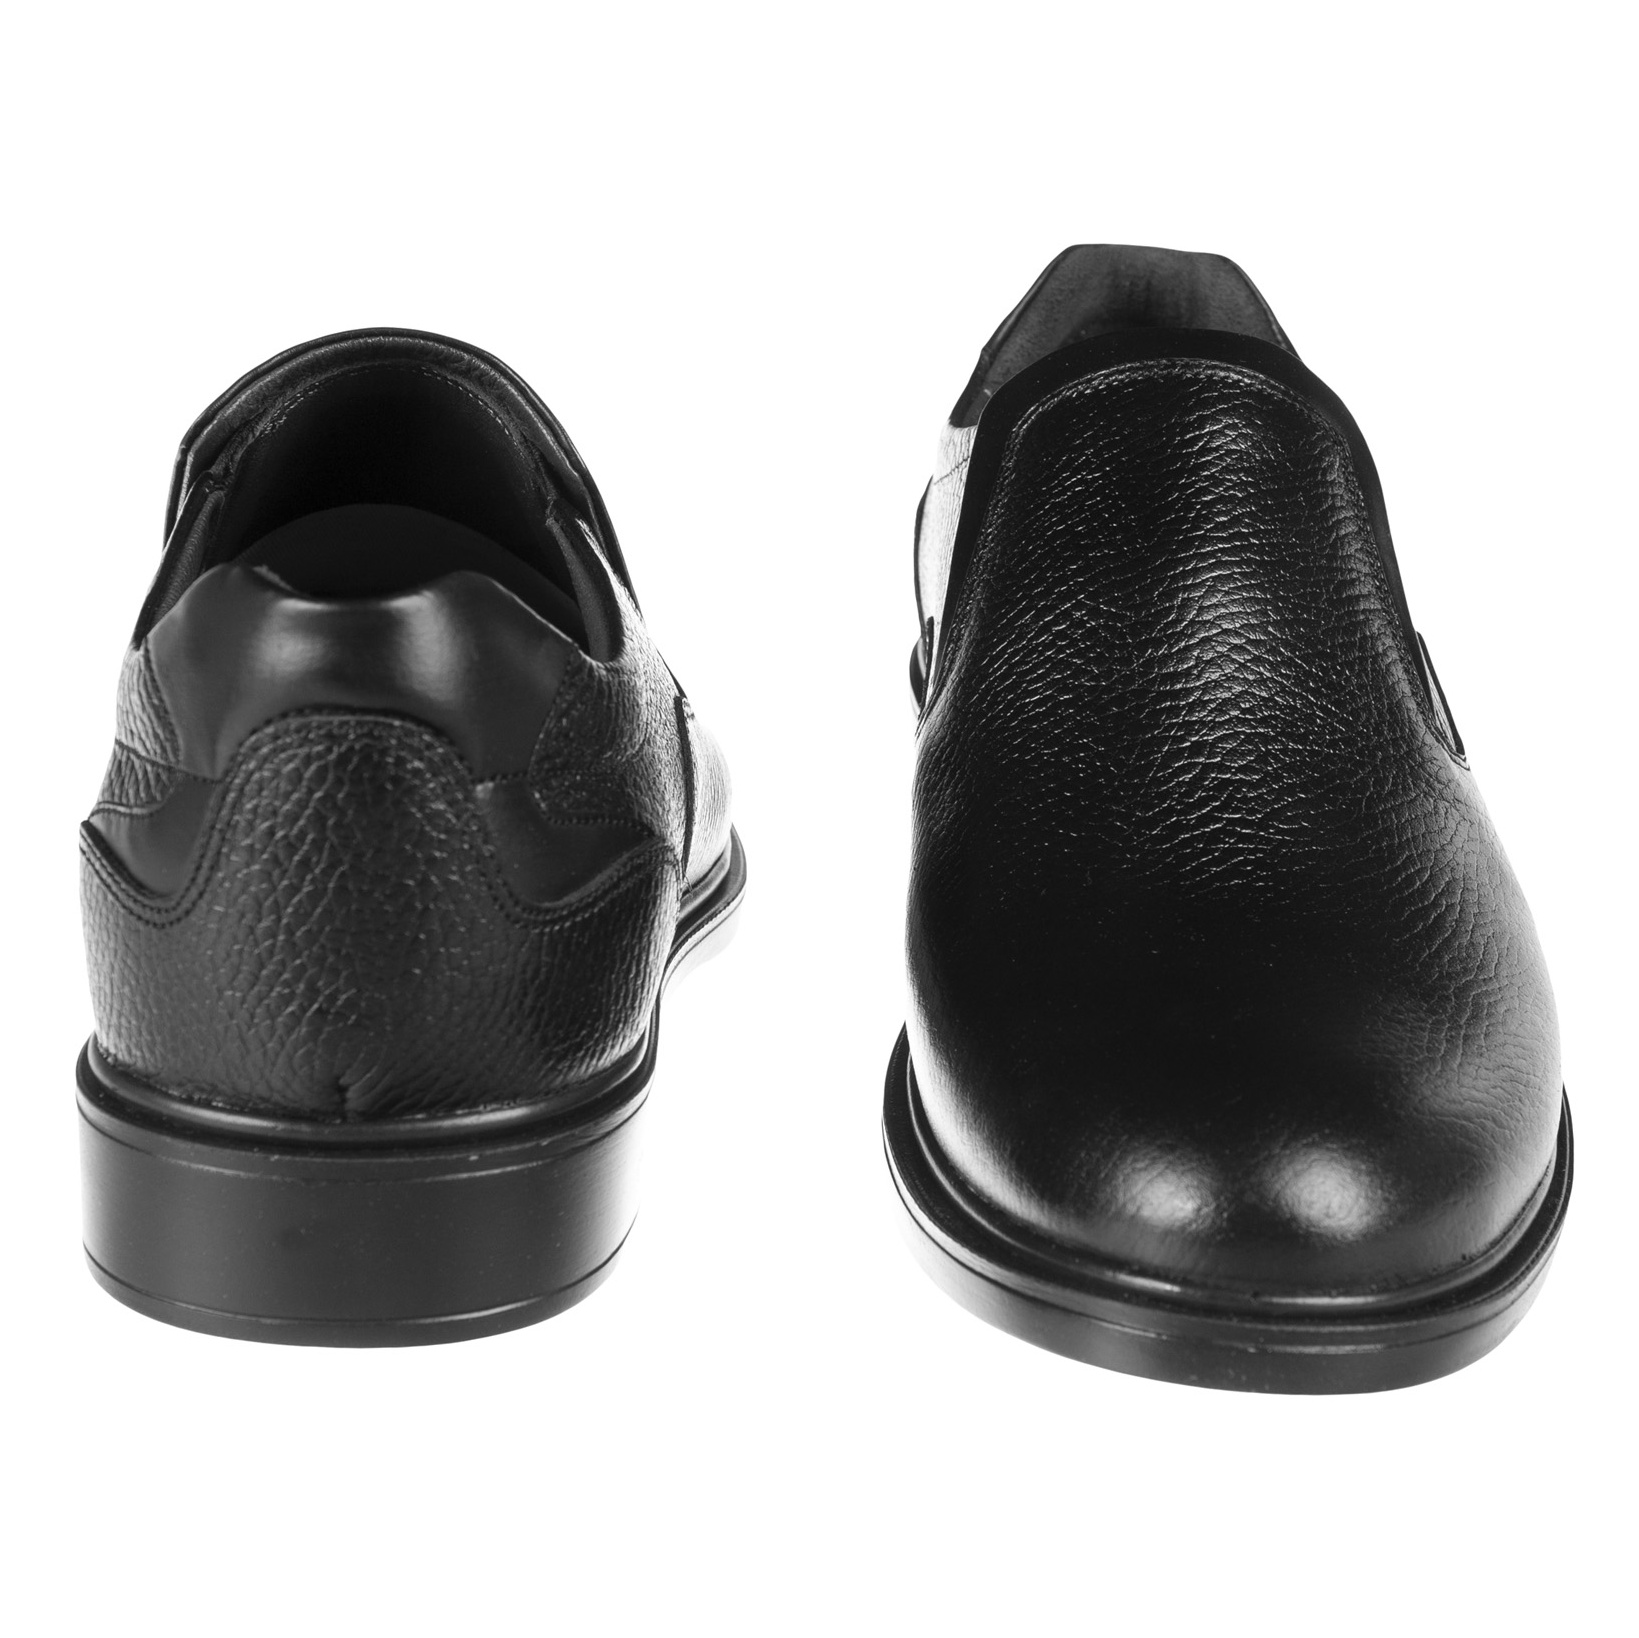 کفش مردانه دلفارد مدل 7048A503-101 - مشکی - 4